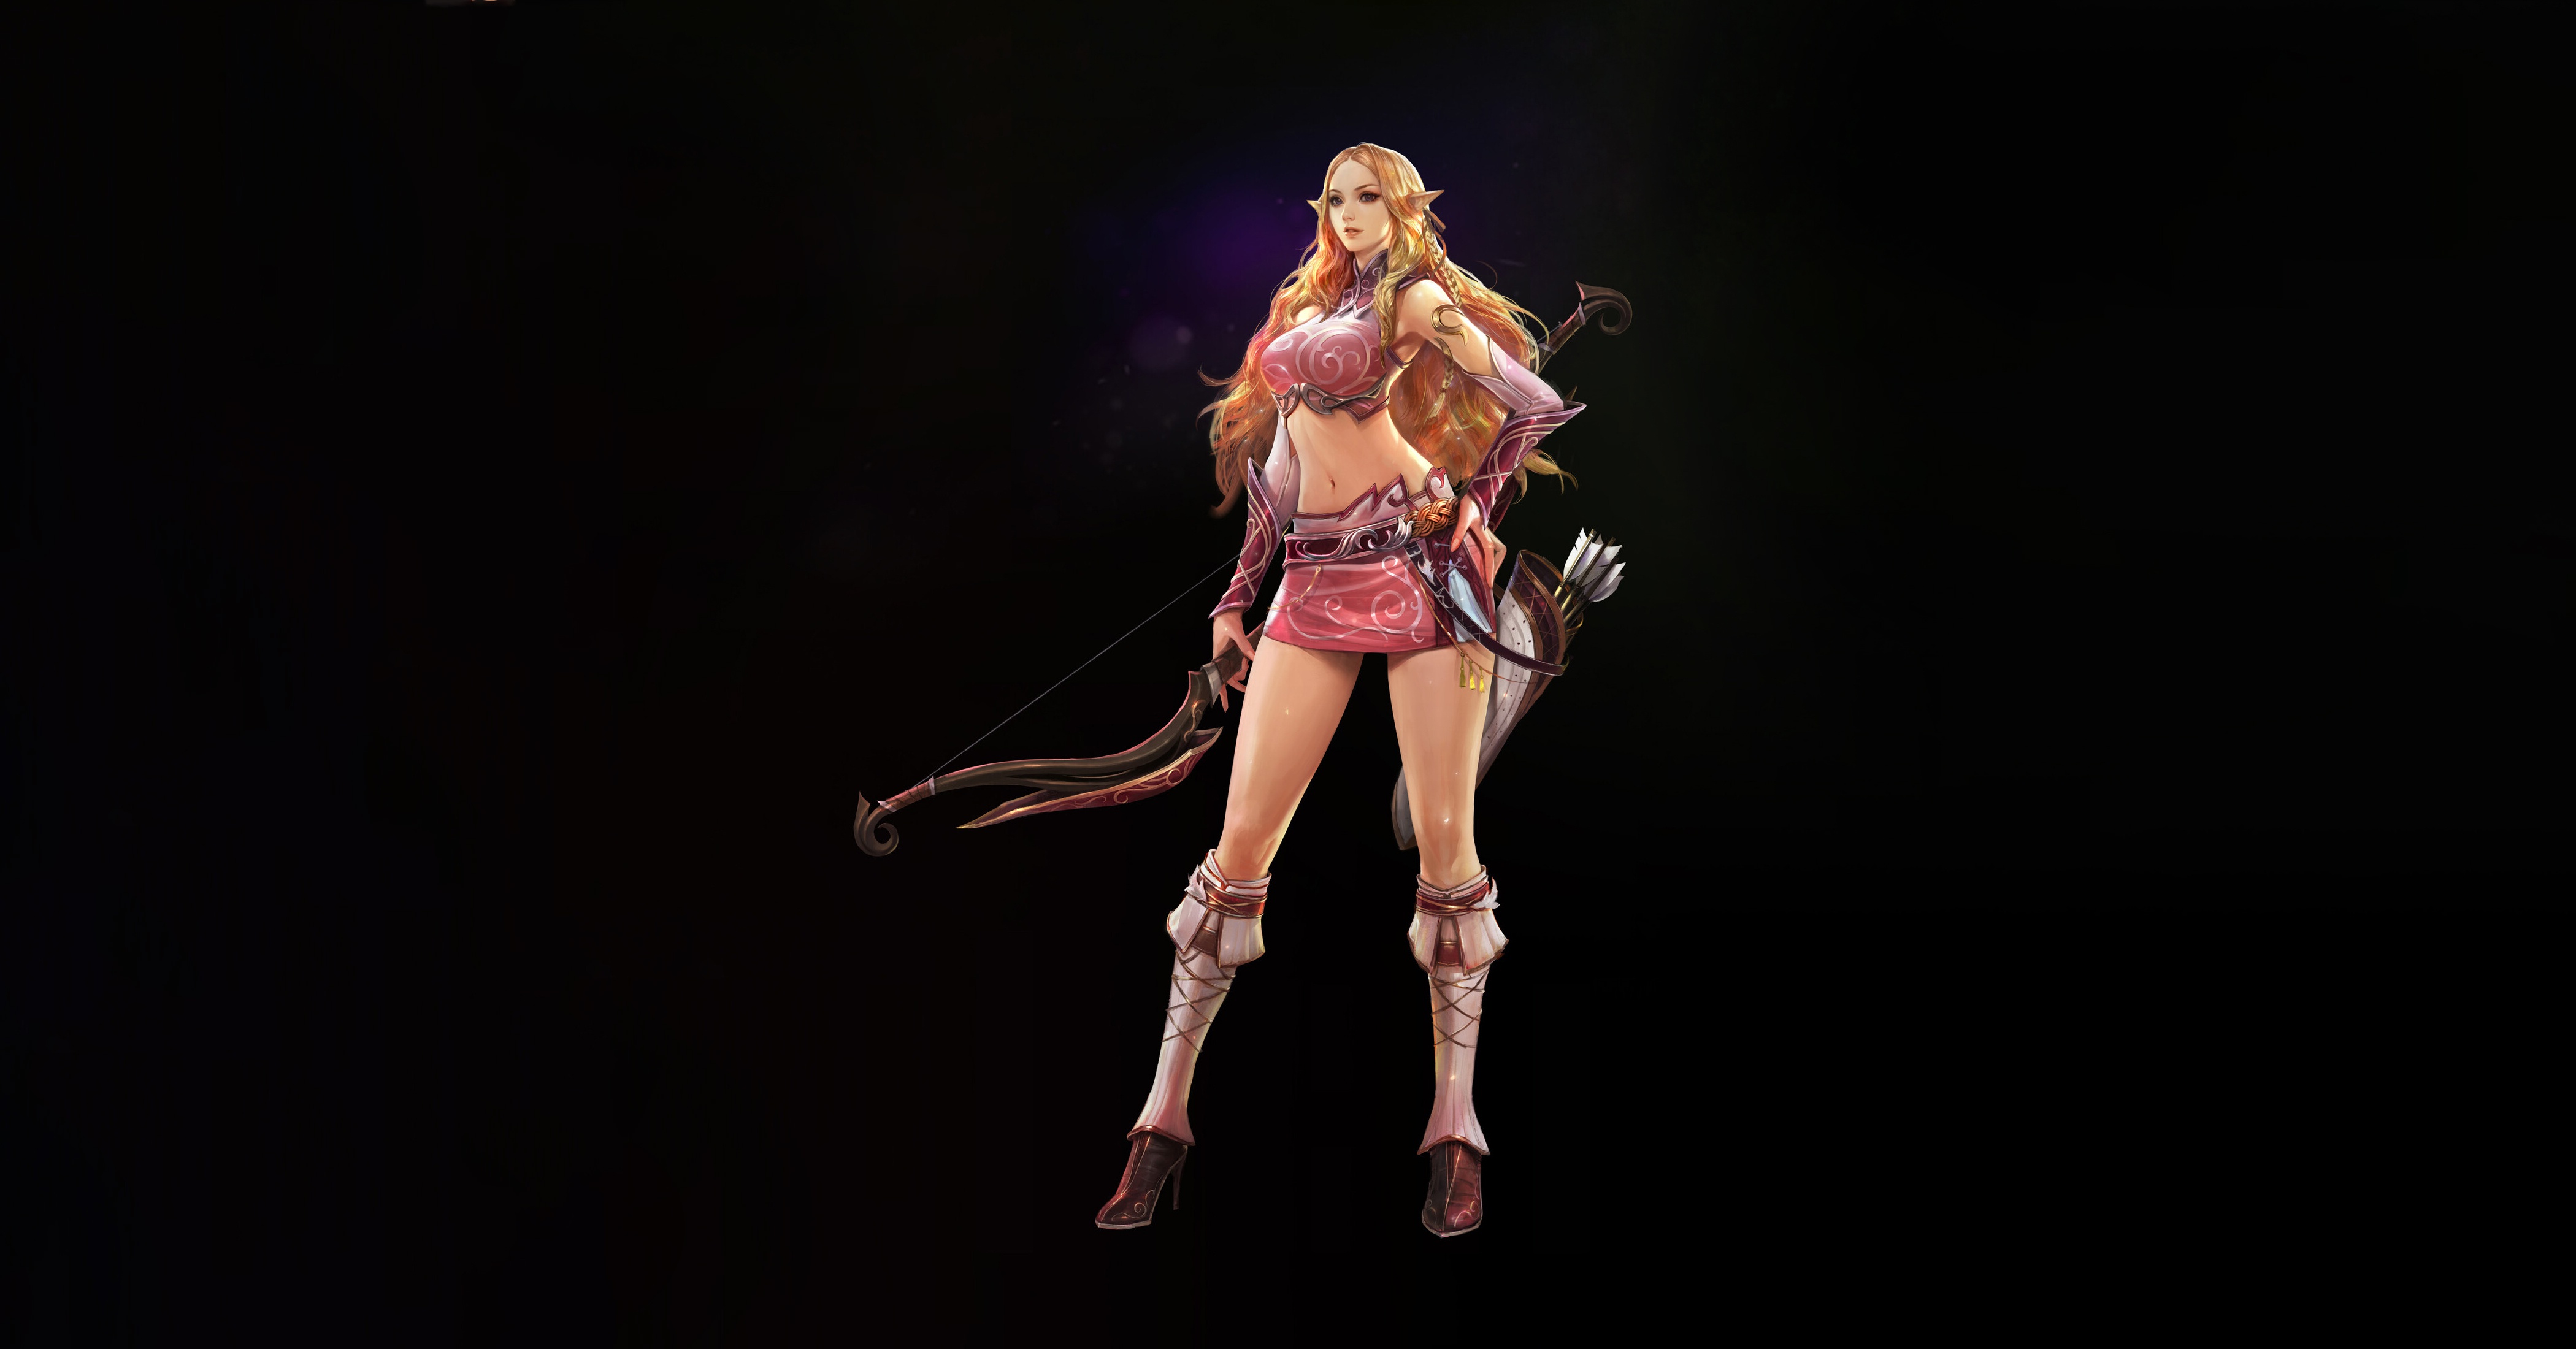 General 4200x2200 fantasy art fantasy girl blonde archer bow Kim Sung Hwan